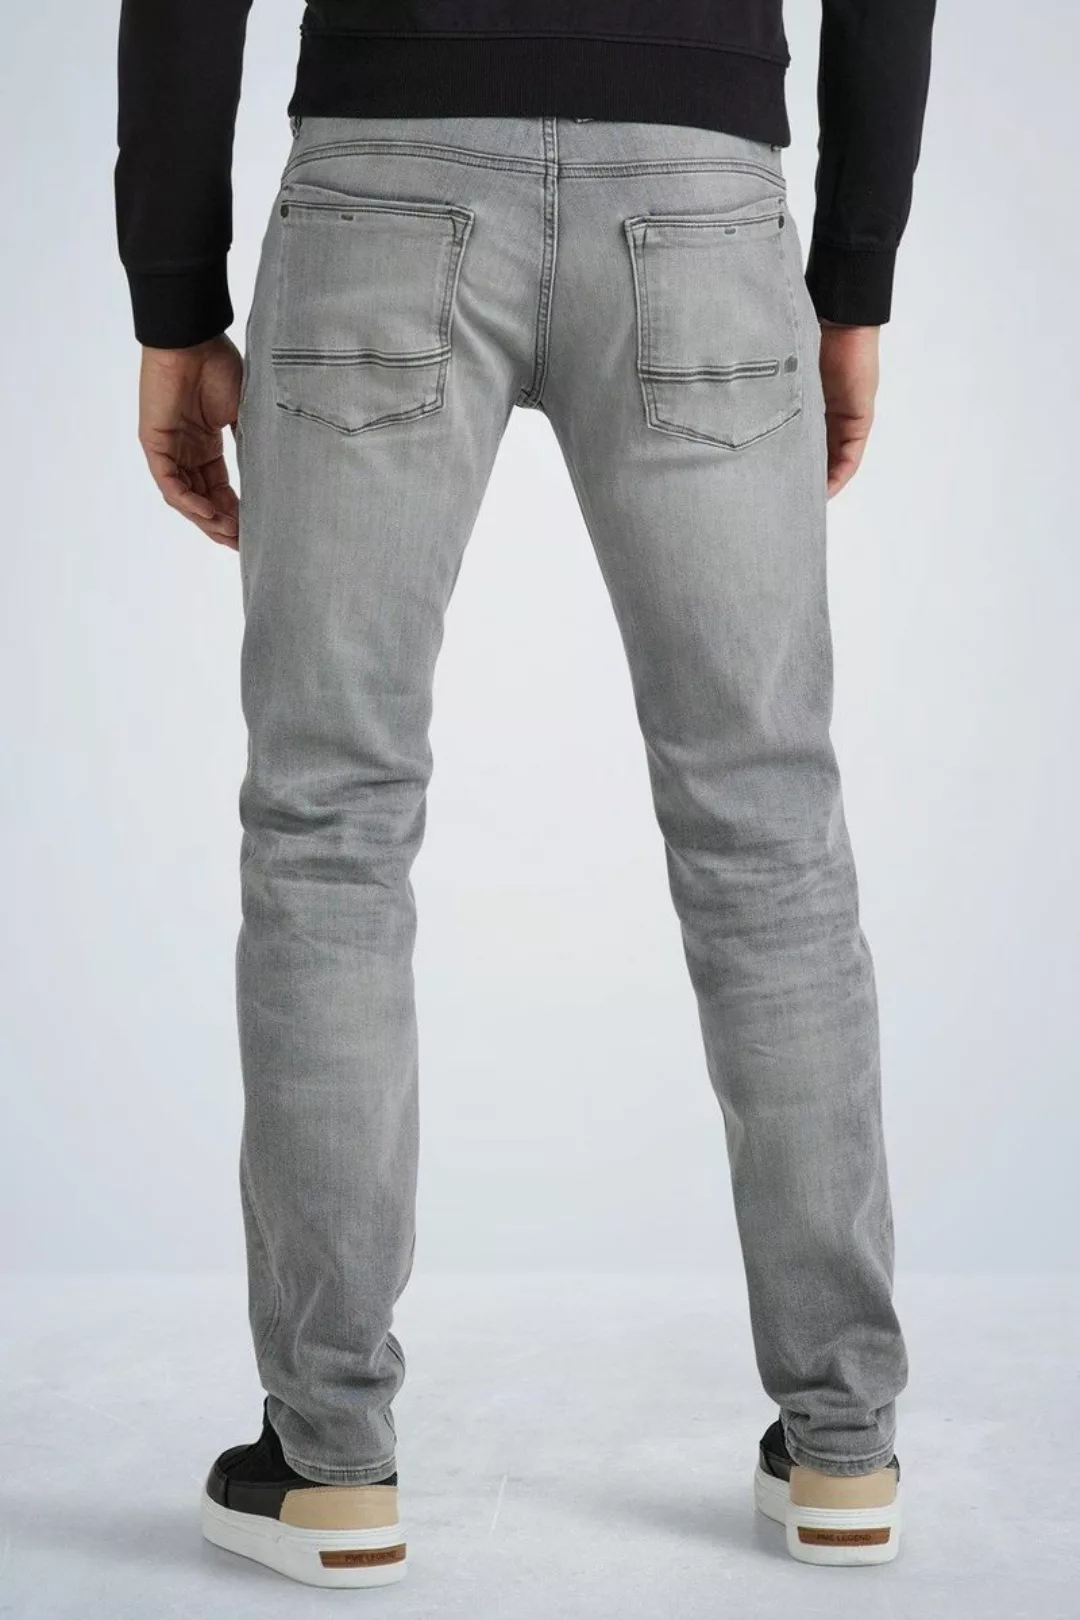 PME Legend Commander 3.0 Jeans Grau - Größe W 35 - L 32 günstig online kaufen